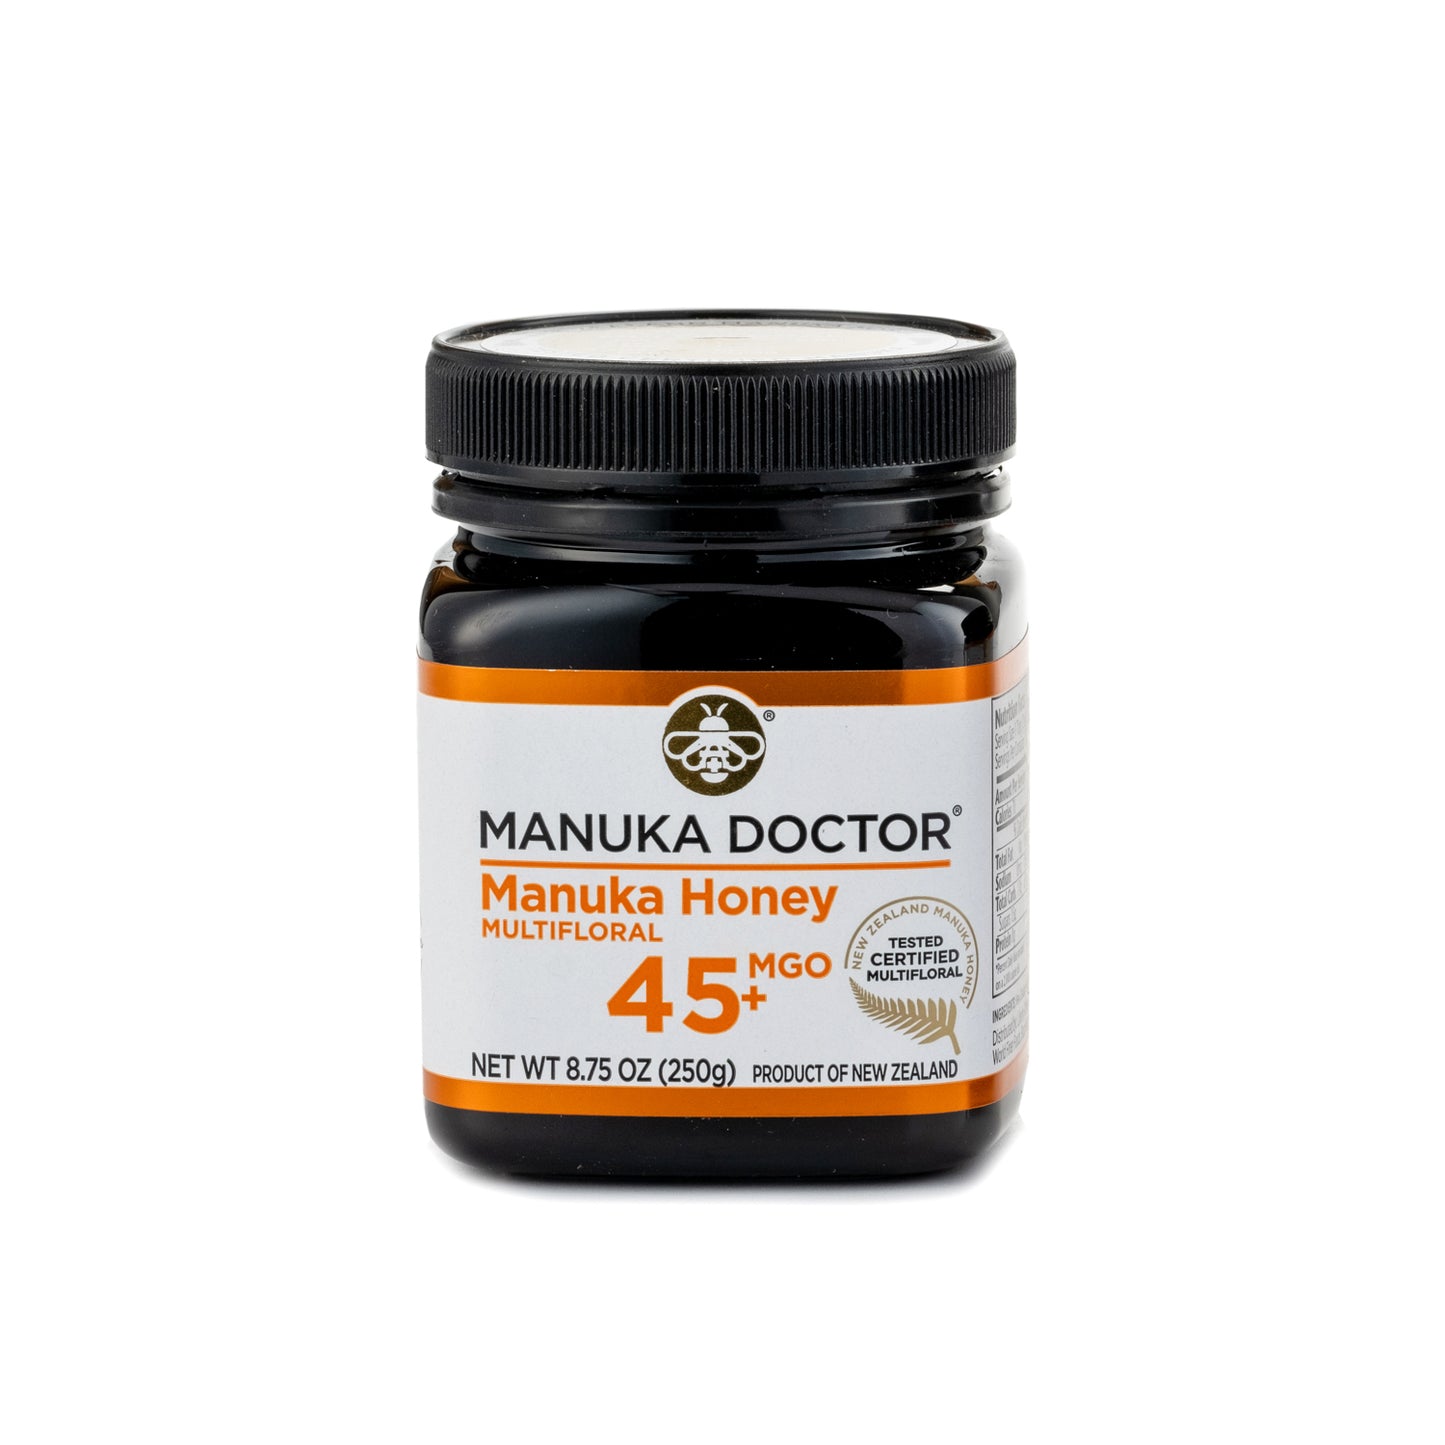 Manuka Doctor Manuka Honey Bio Active 45+ 250g